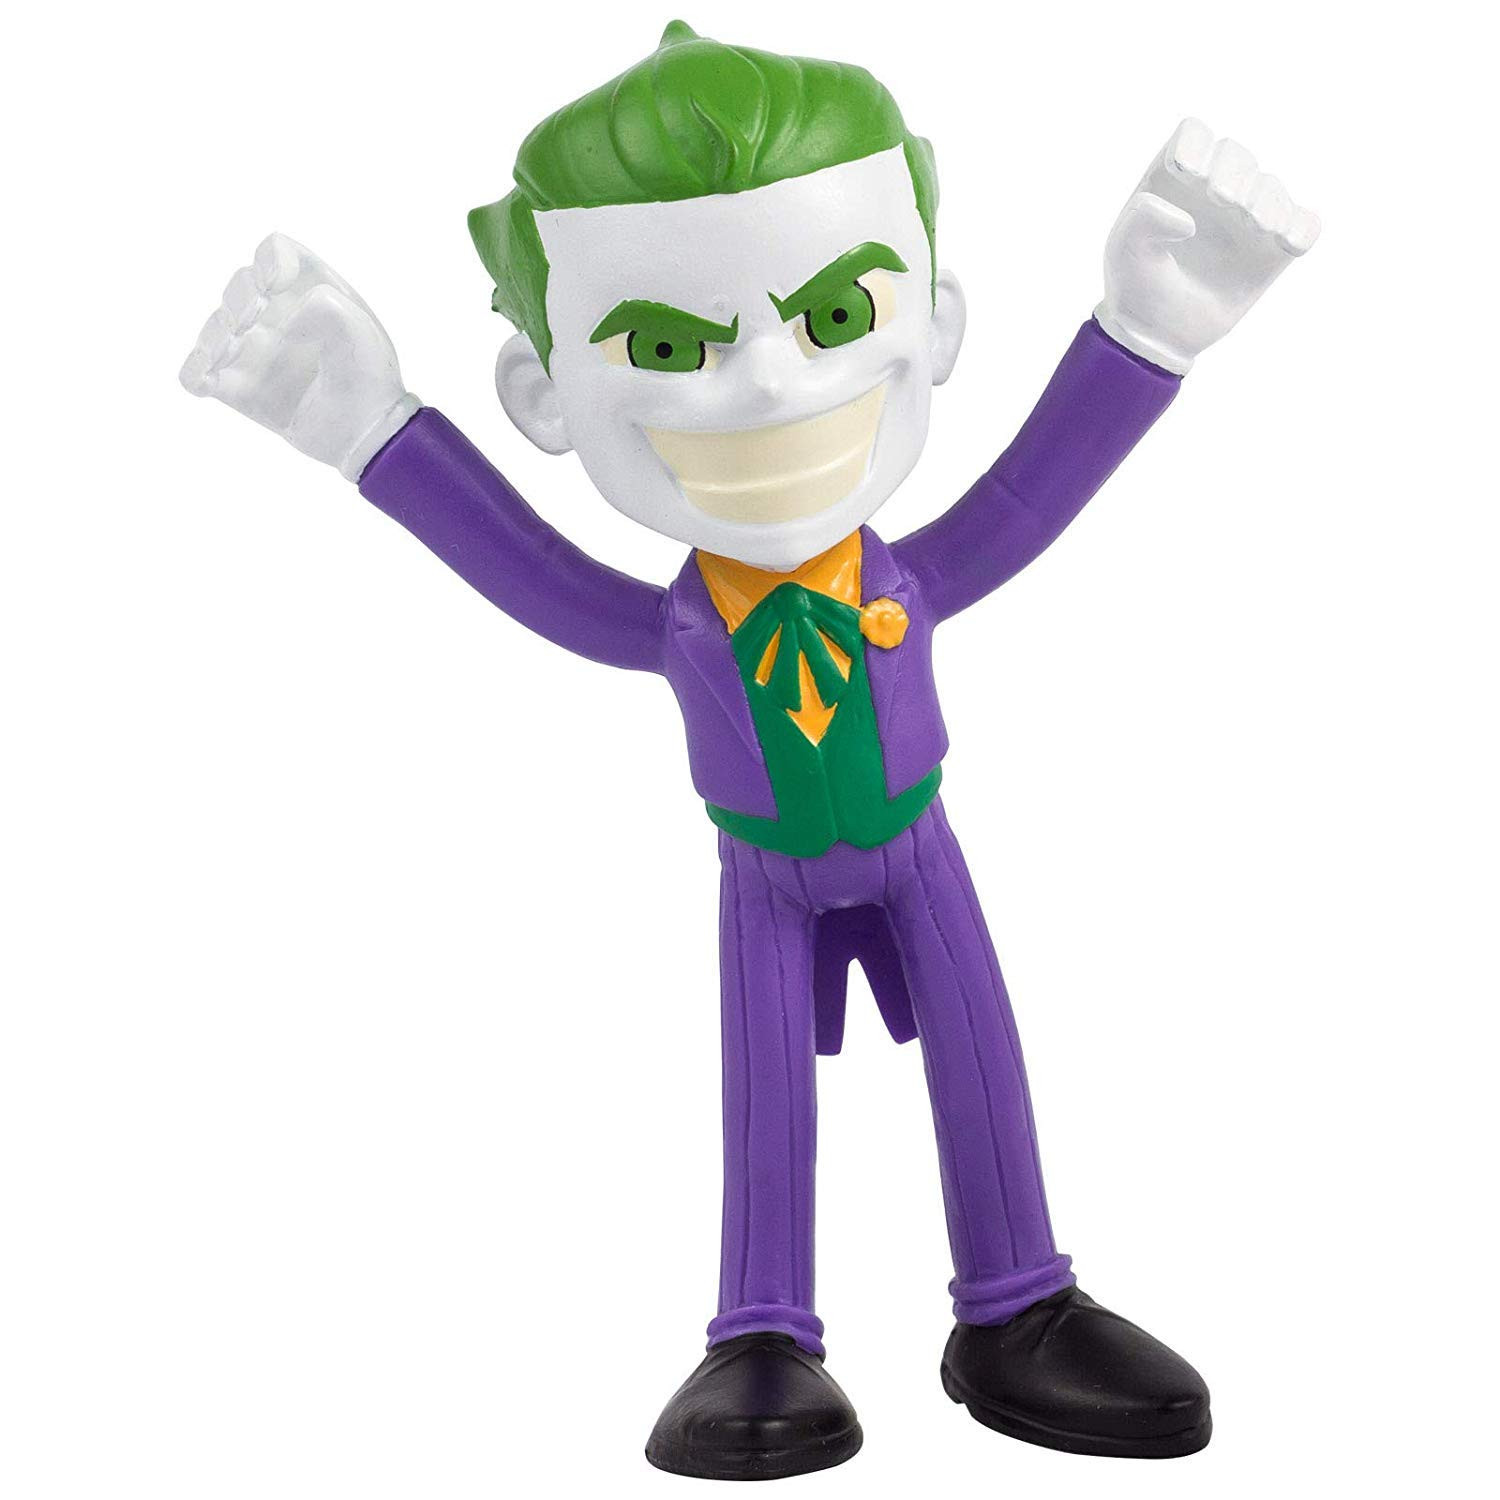 The Joker Bendable Figure - Action Bend-Deez